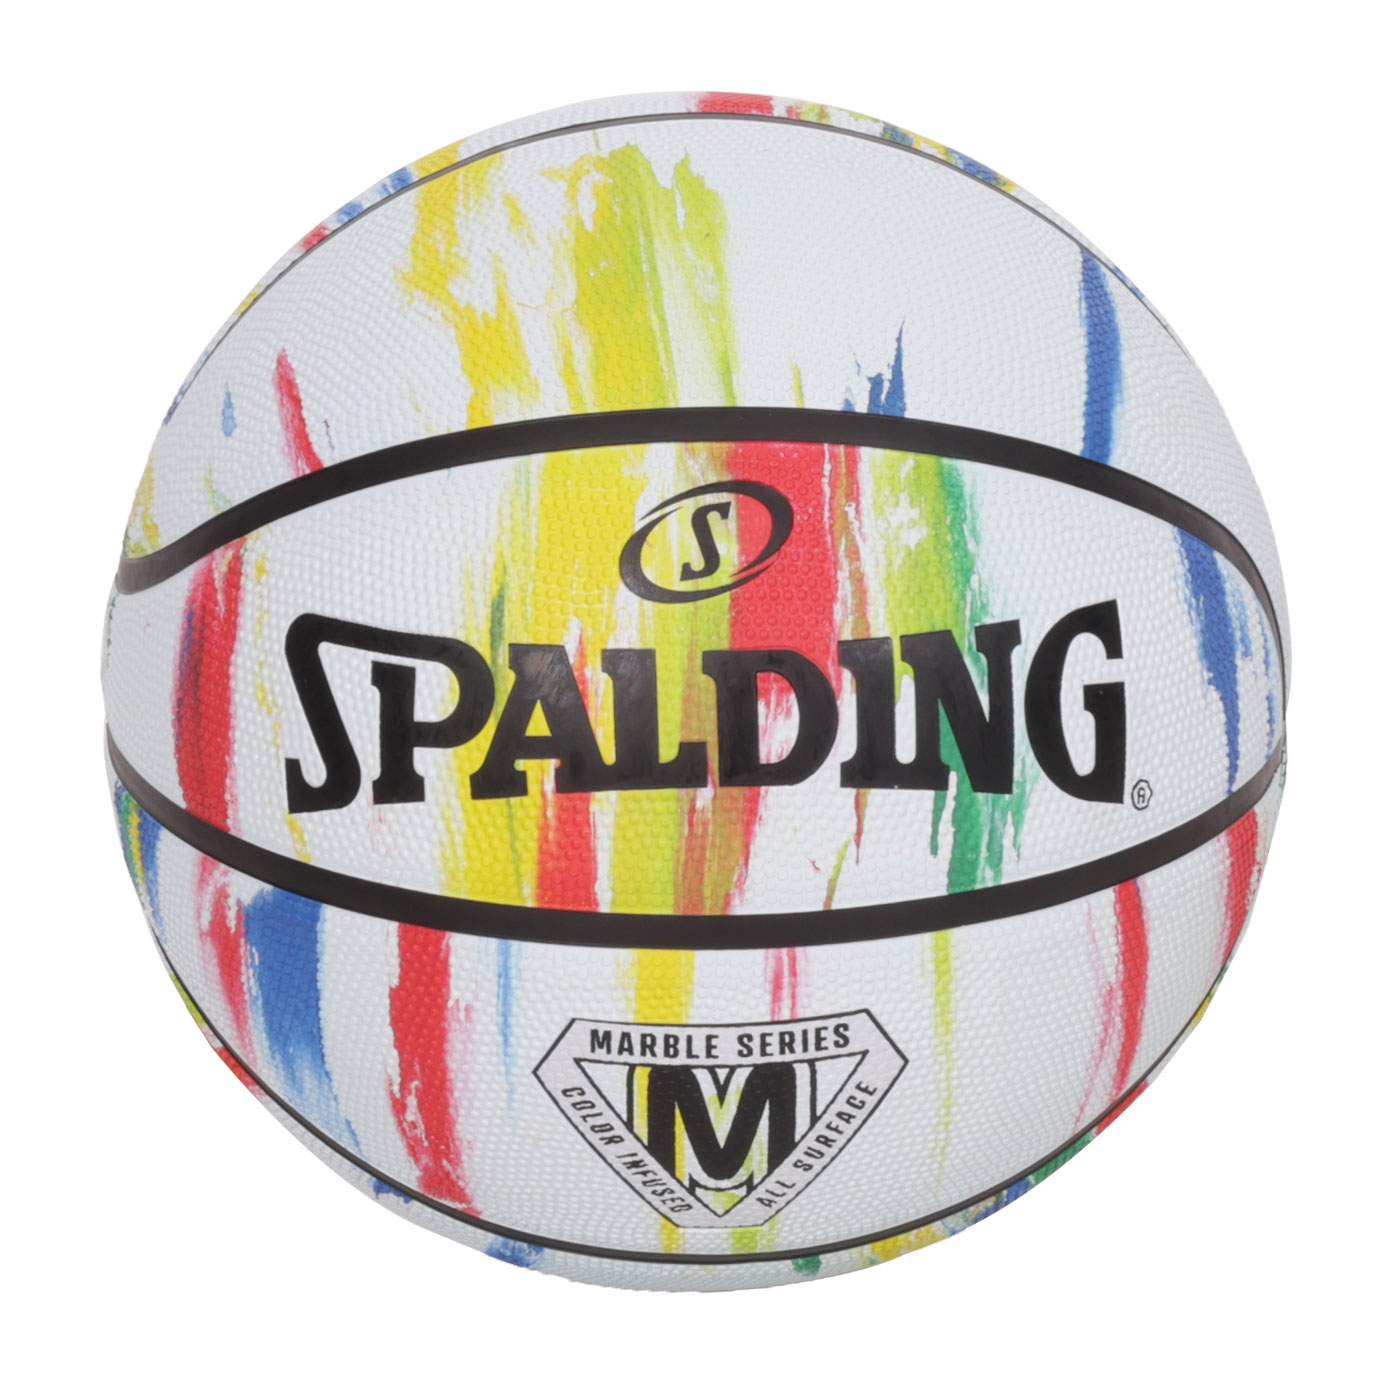 SPALDING 大理石系列彩虹#7橡膠籃球#40646  SPA84397 - 白彩色